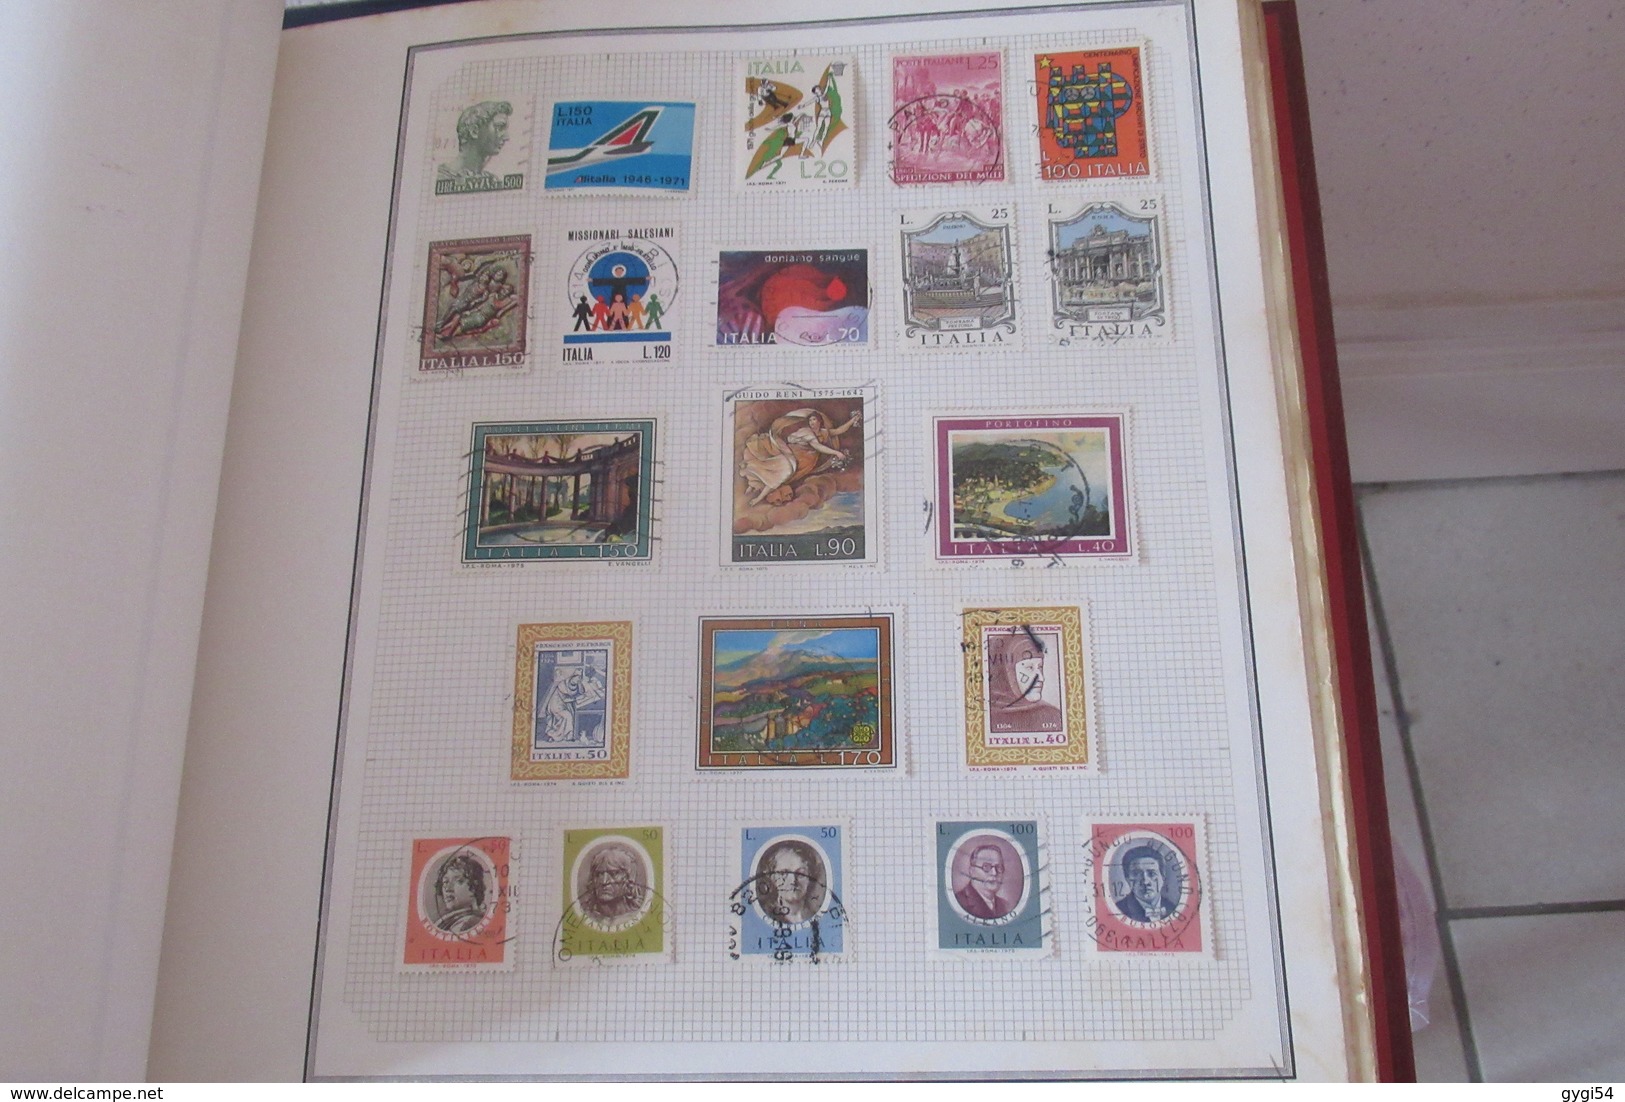 Collection de timbres divers  du Monde  dont Monaco    74  scans